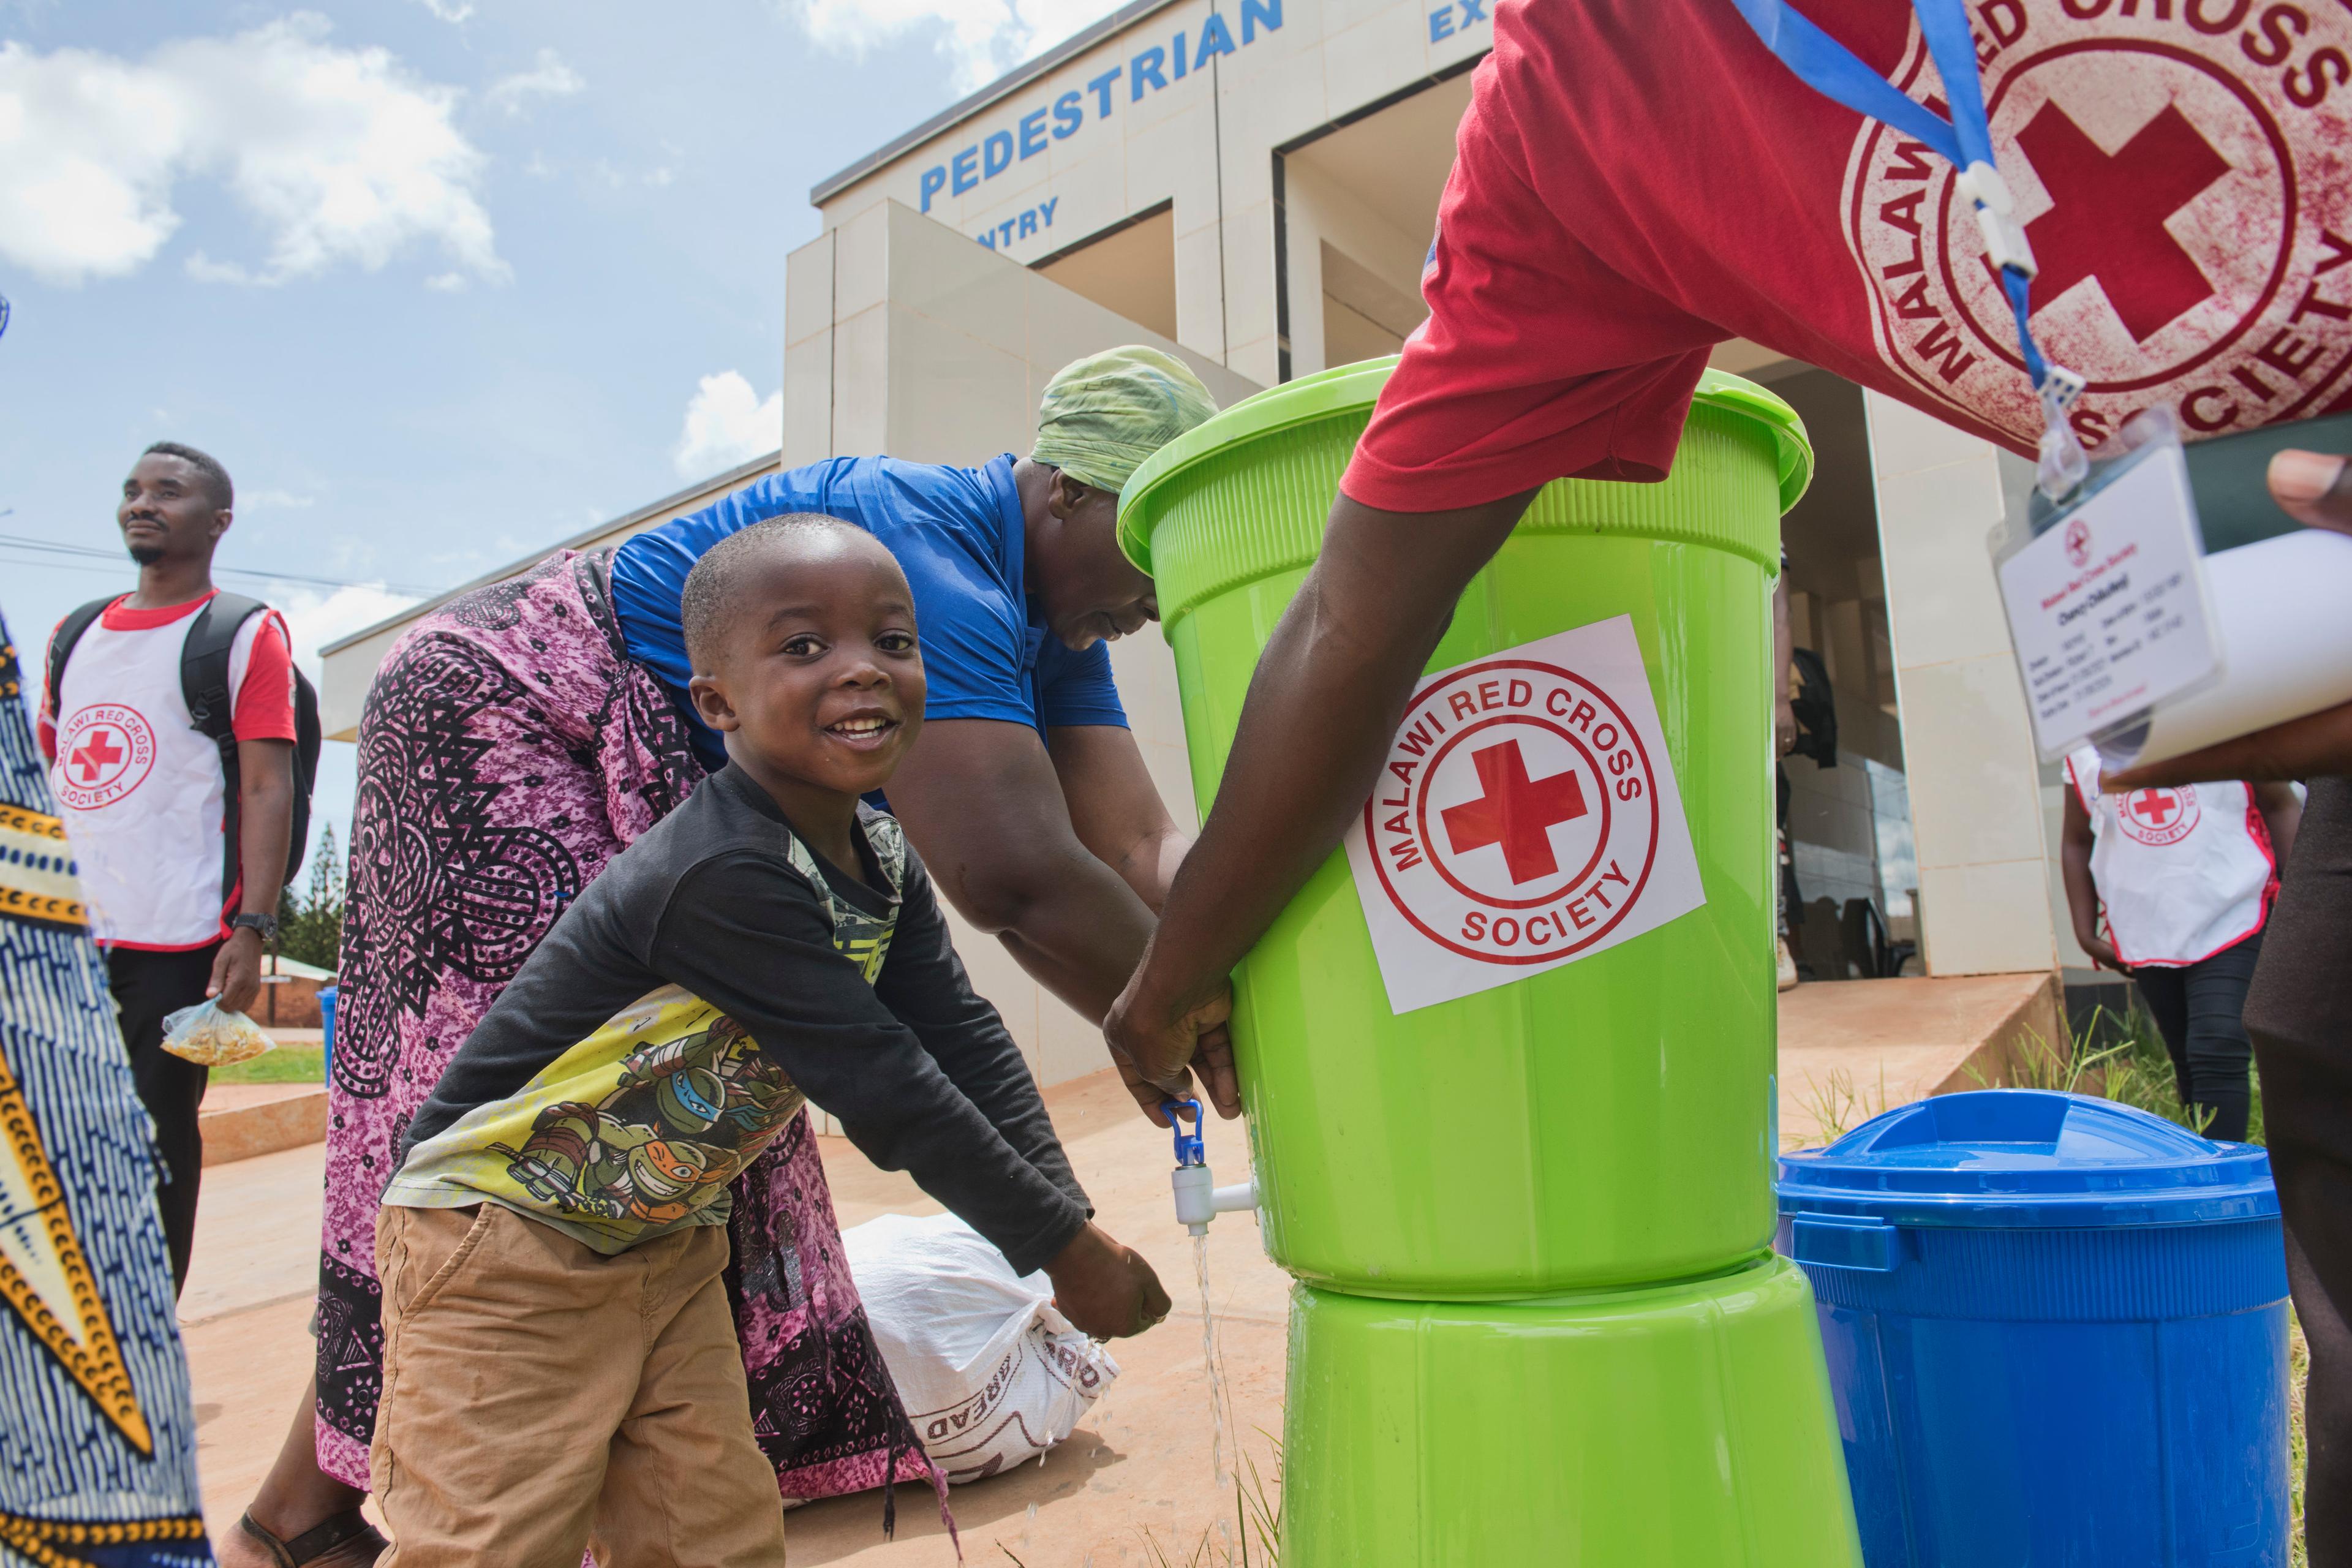 Un jeune enfant se lave les mains depuis une bassine en plastique sur laquelle figure un grand autocollant de la Croix-Rouge du Malawi. Une personne adulte dont on ne voit pas la tête lui actionne le robinet. Sur le t-shirt de la personne adulte, le même logo de la Croix-Rouge du Malawi.